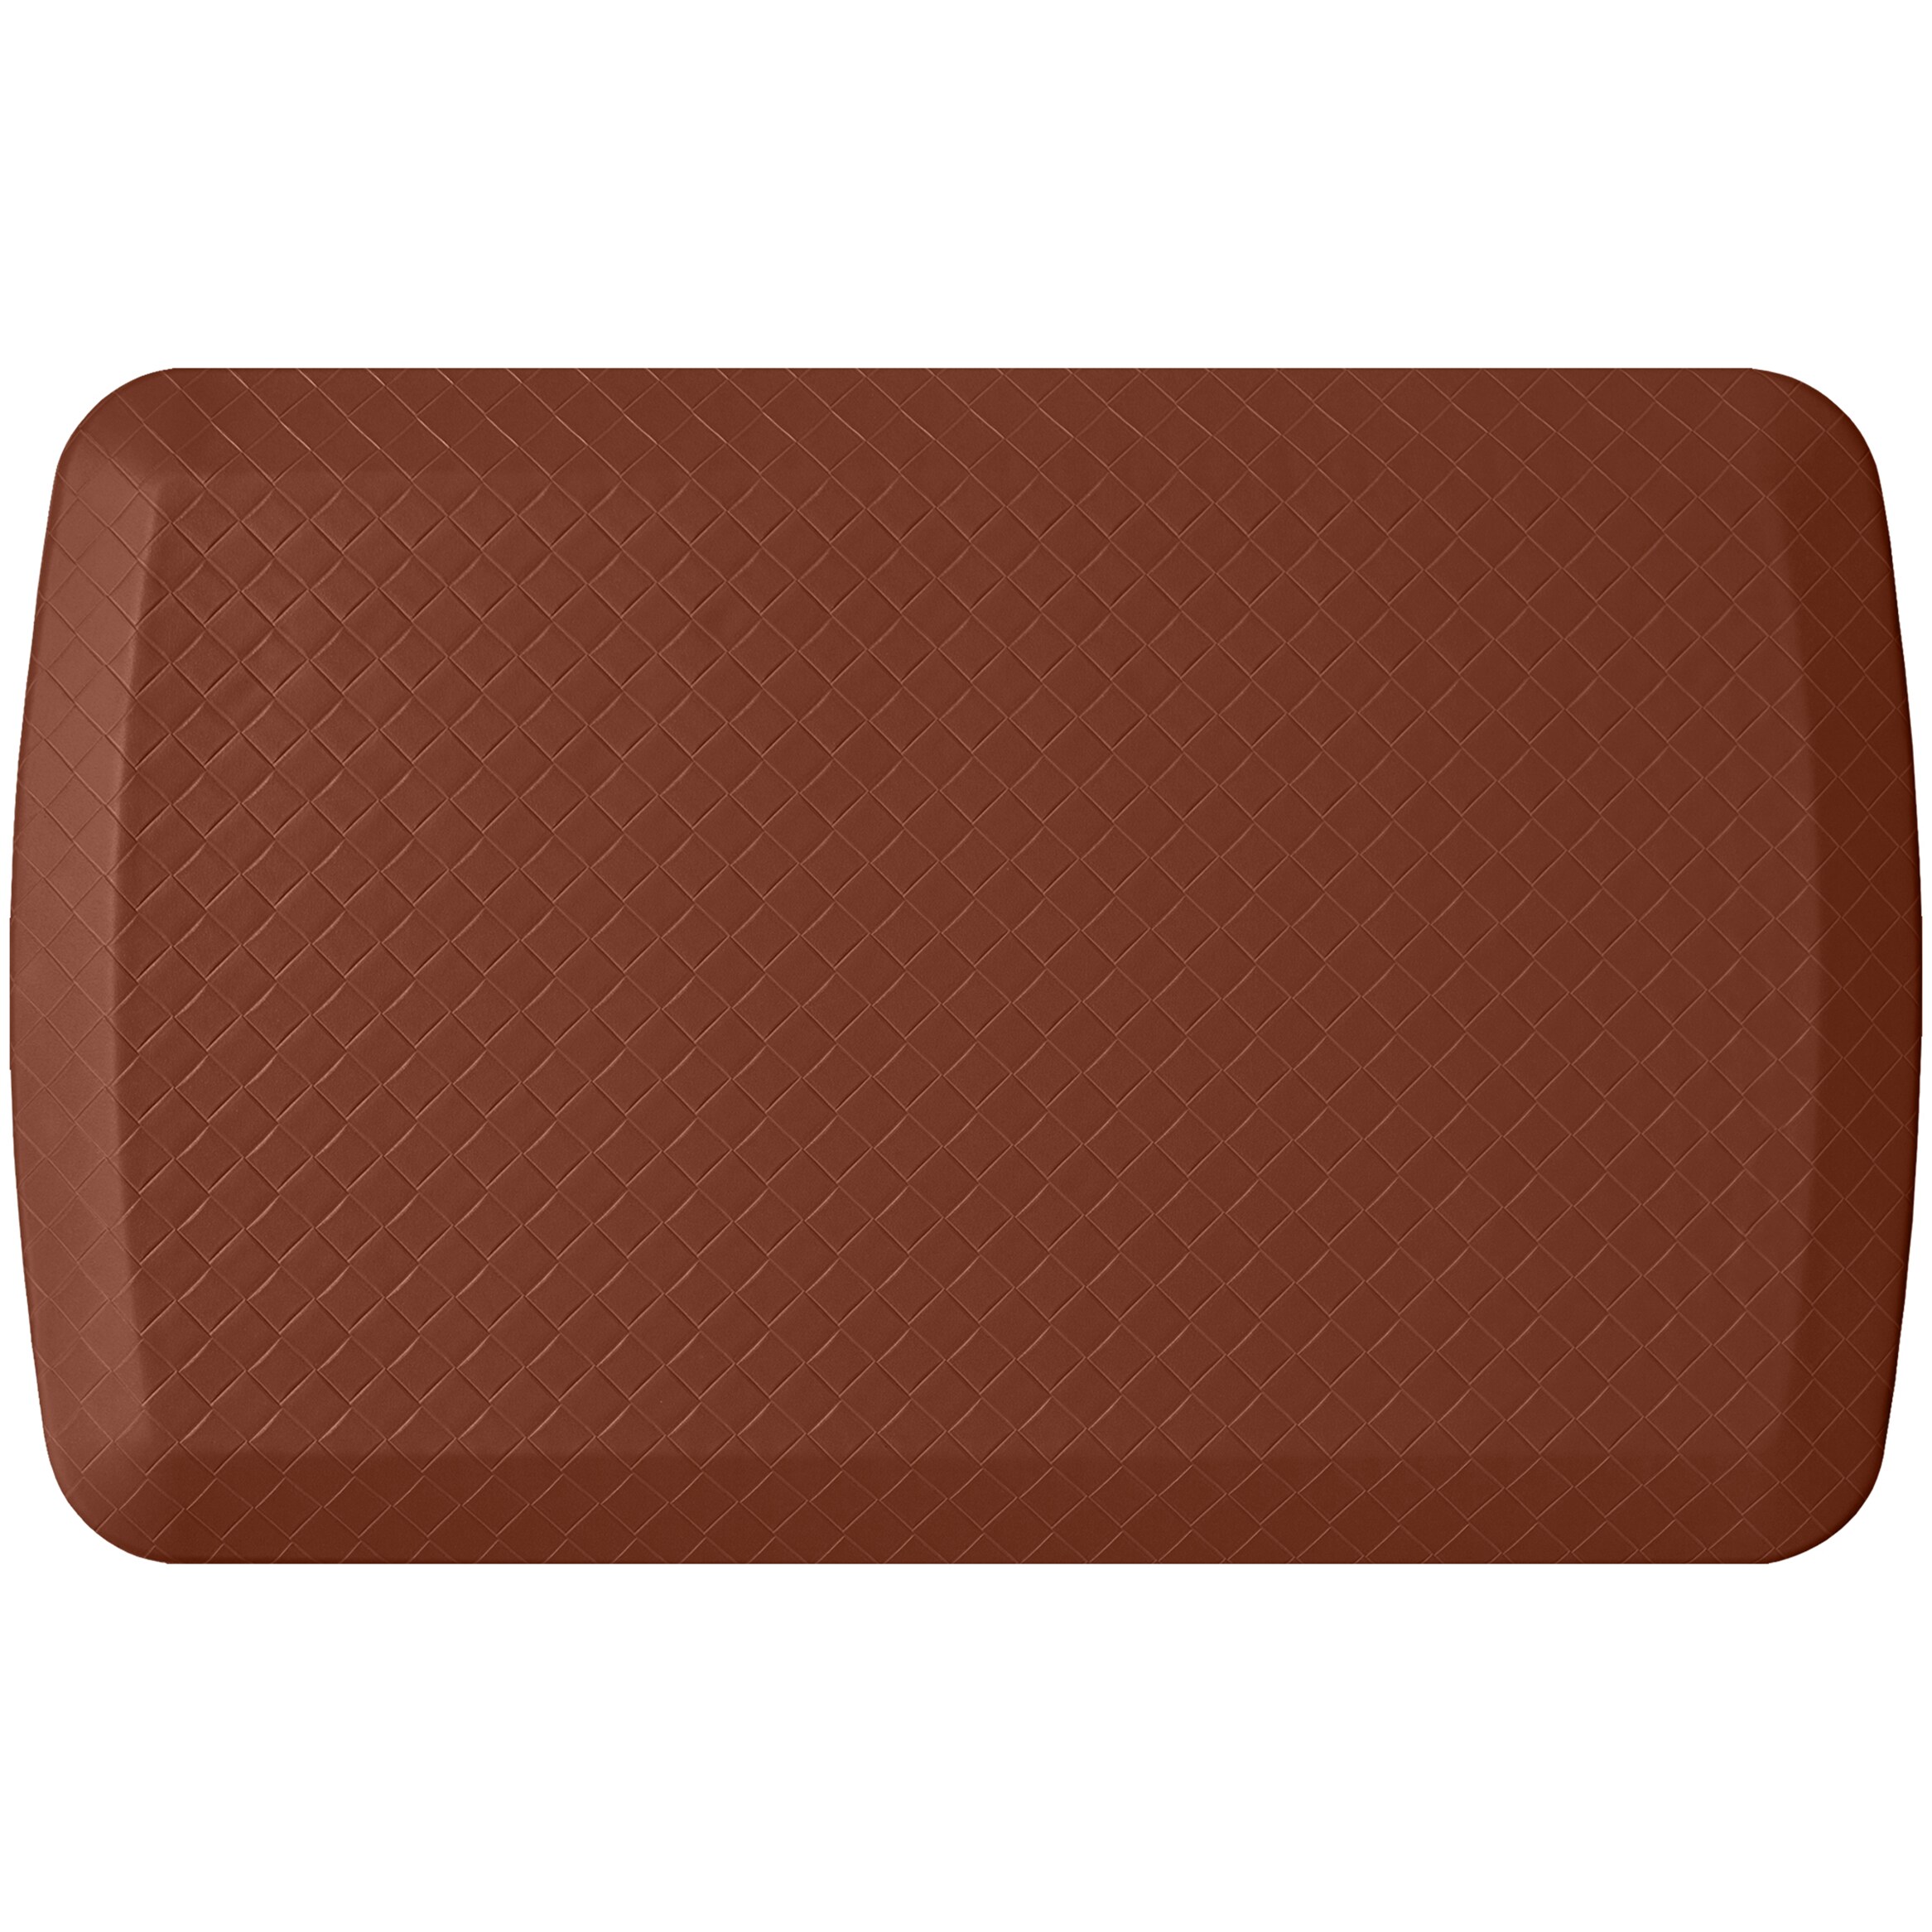 GelPro Elite Anti-Fatigue Kitchen Comfort Mat 20x36 inch Basketweave Chestnut Brown